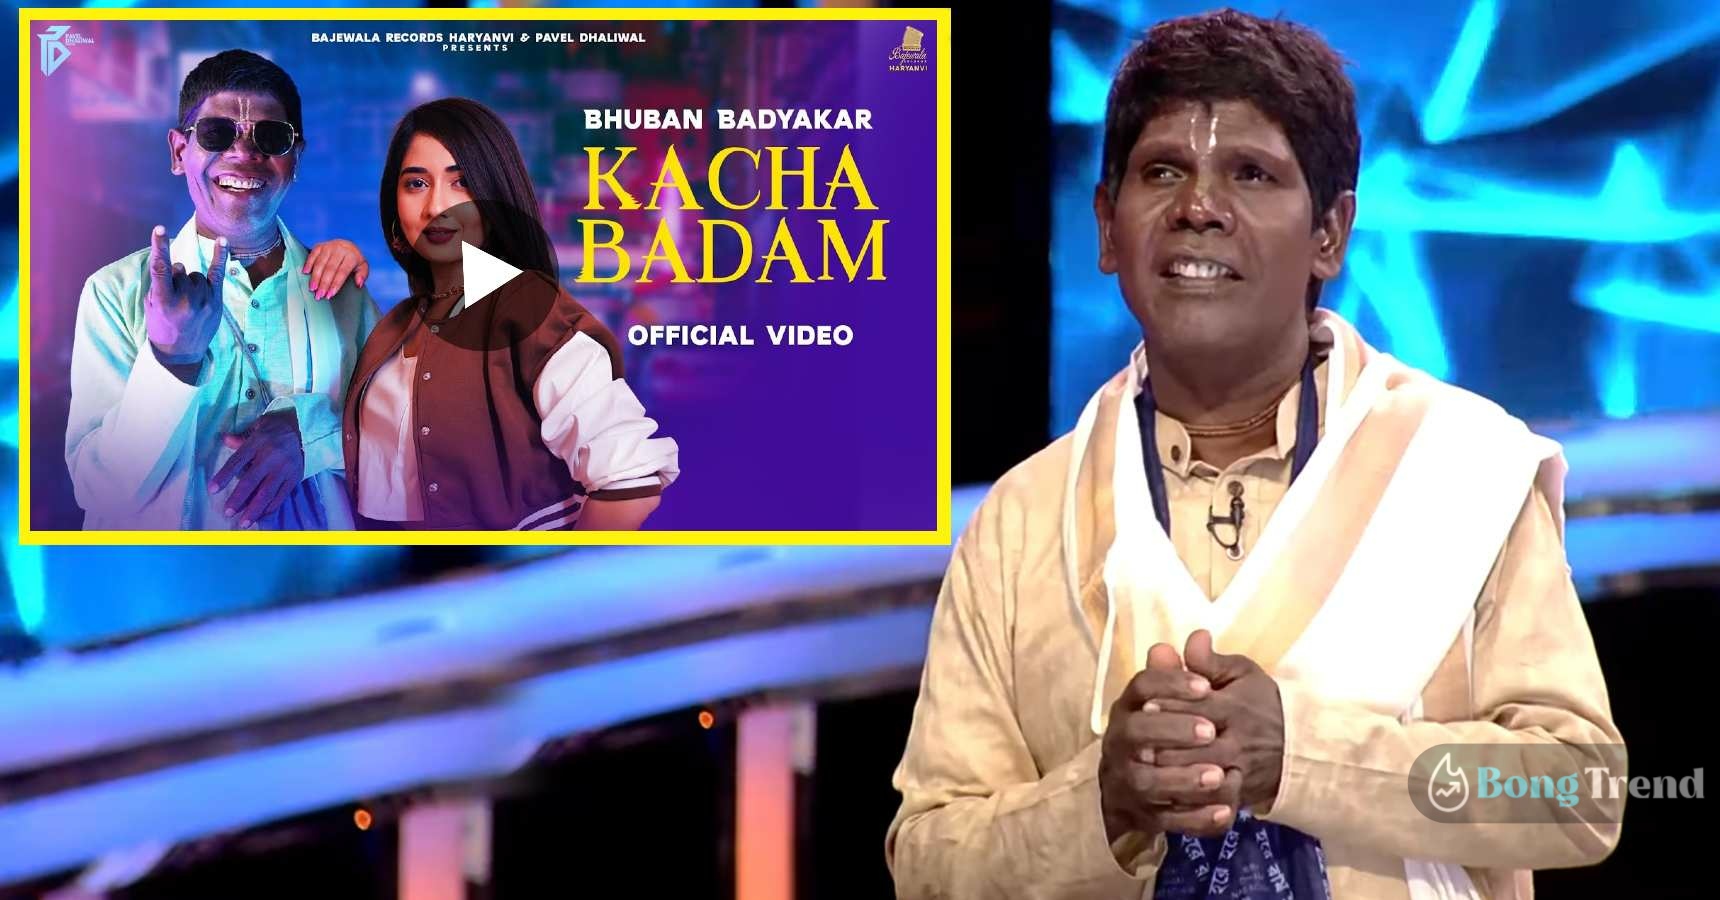 Bhuban Badyakar tells how kacha Badam was composed in Dadagiri